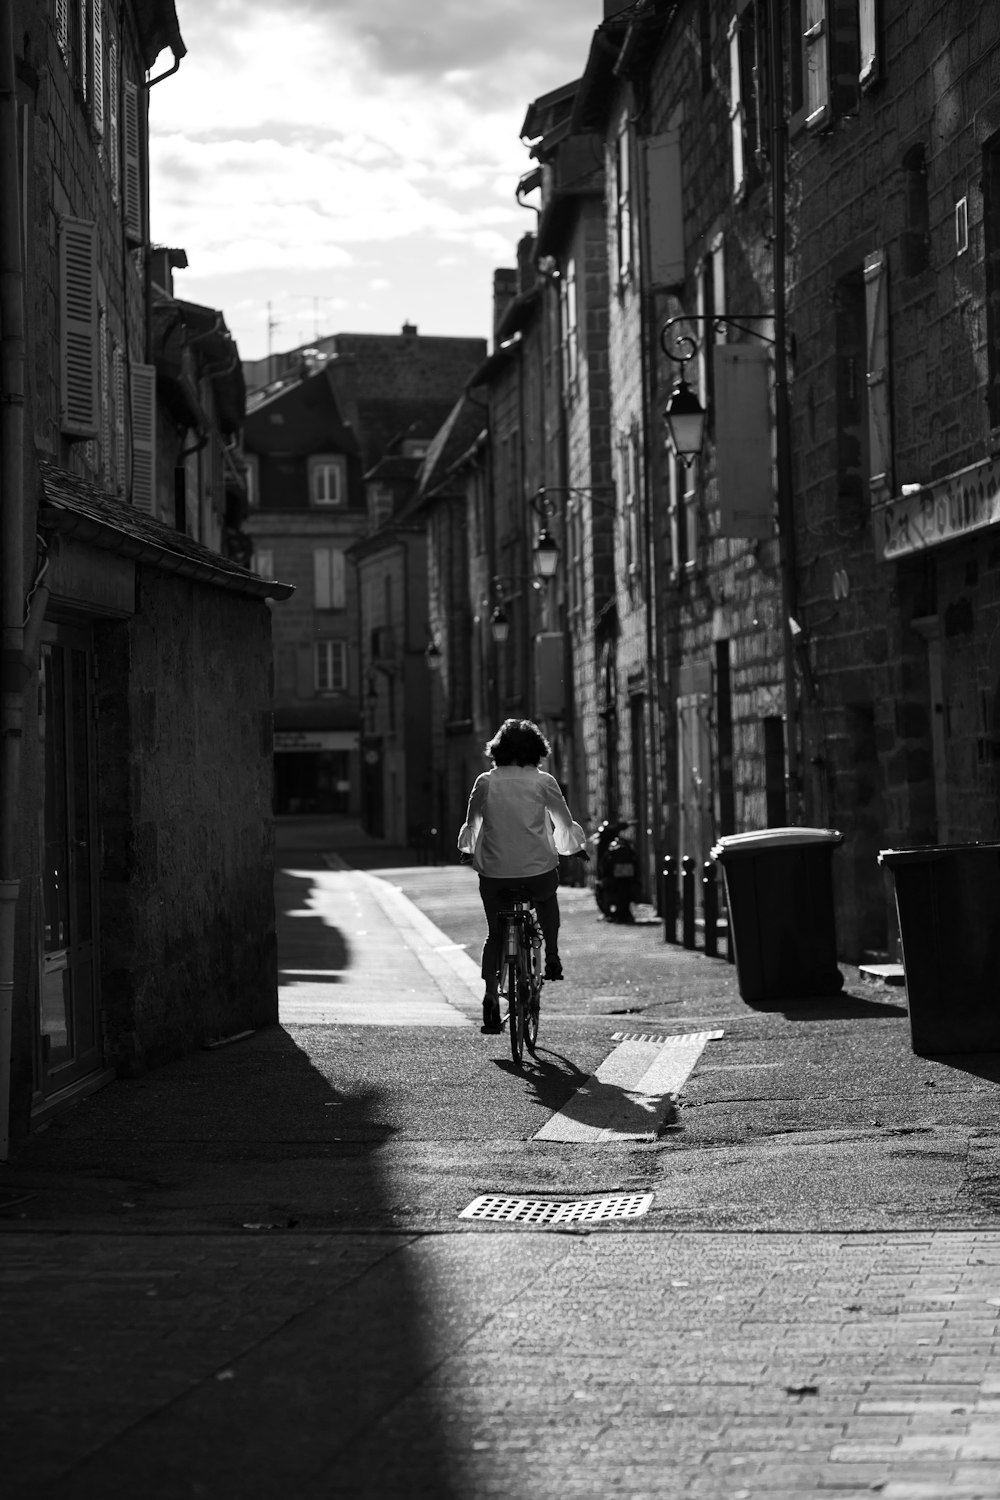 Mann im weißen Hemd fährt Fahrrad auf der Straße in Graustufenfotografie